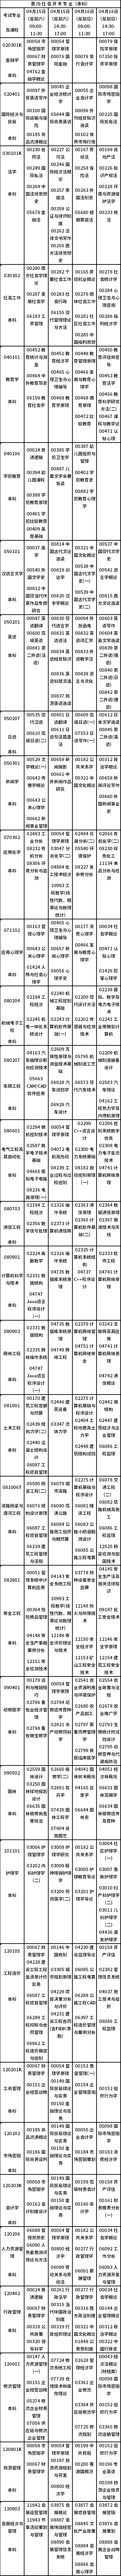 重庆市2023年4月自考开考专业课程安排表-3